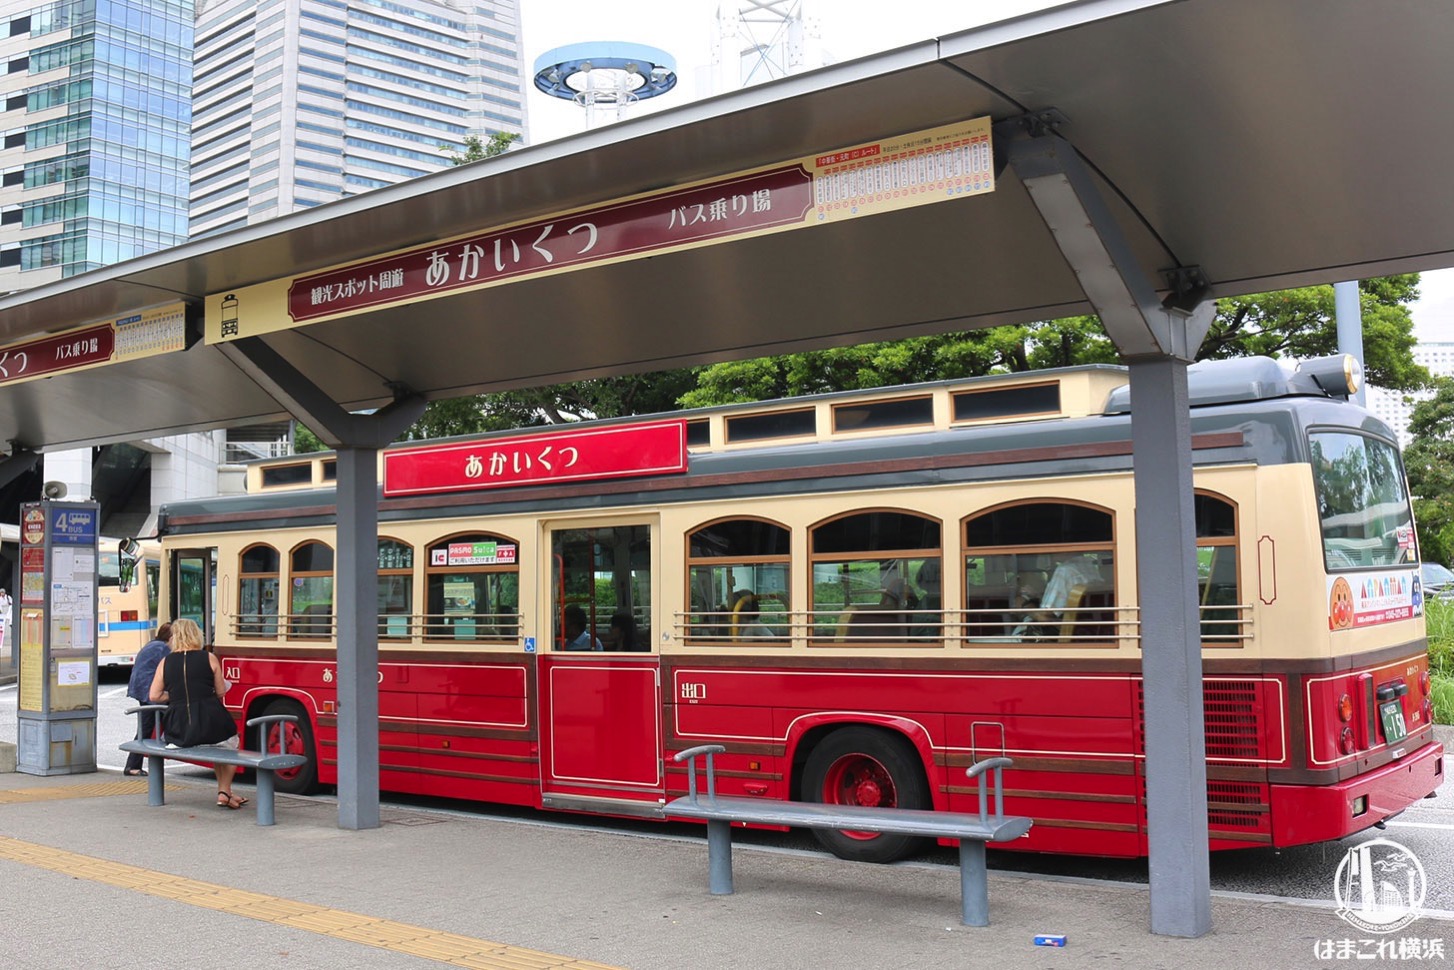 あかいくつなど横浜市交通局観光系バス路線の一部、3月28日と29日に運休